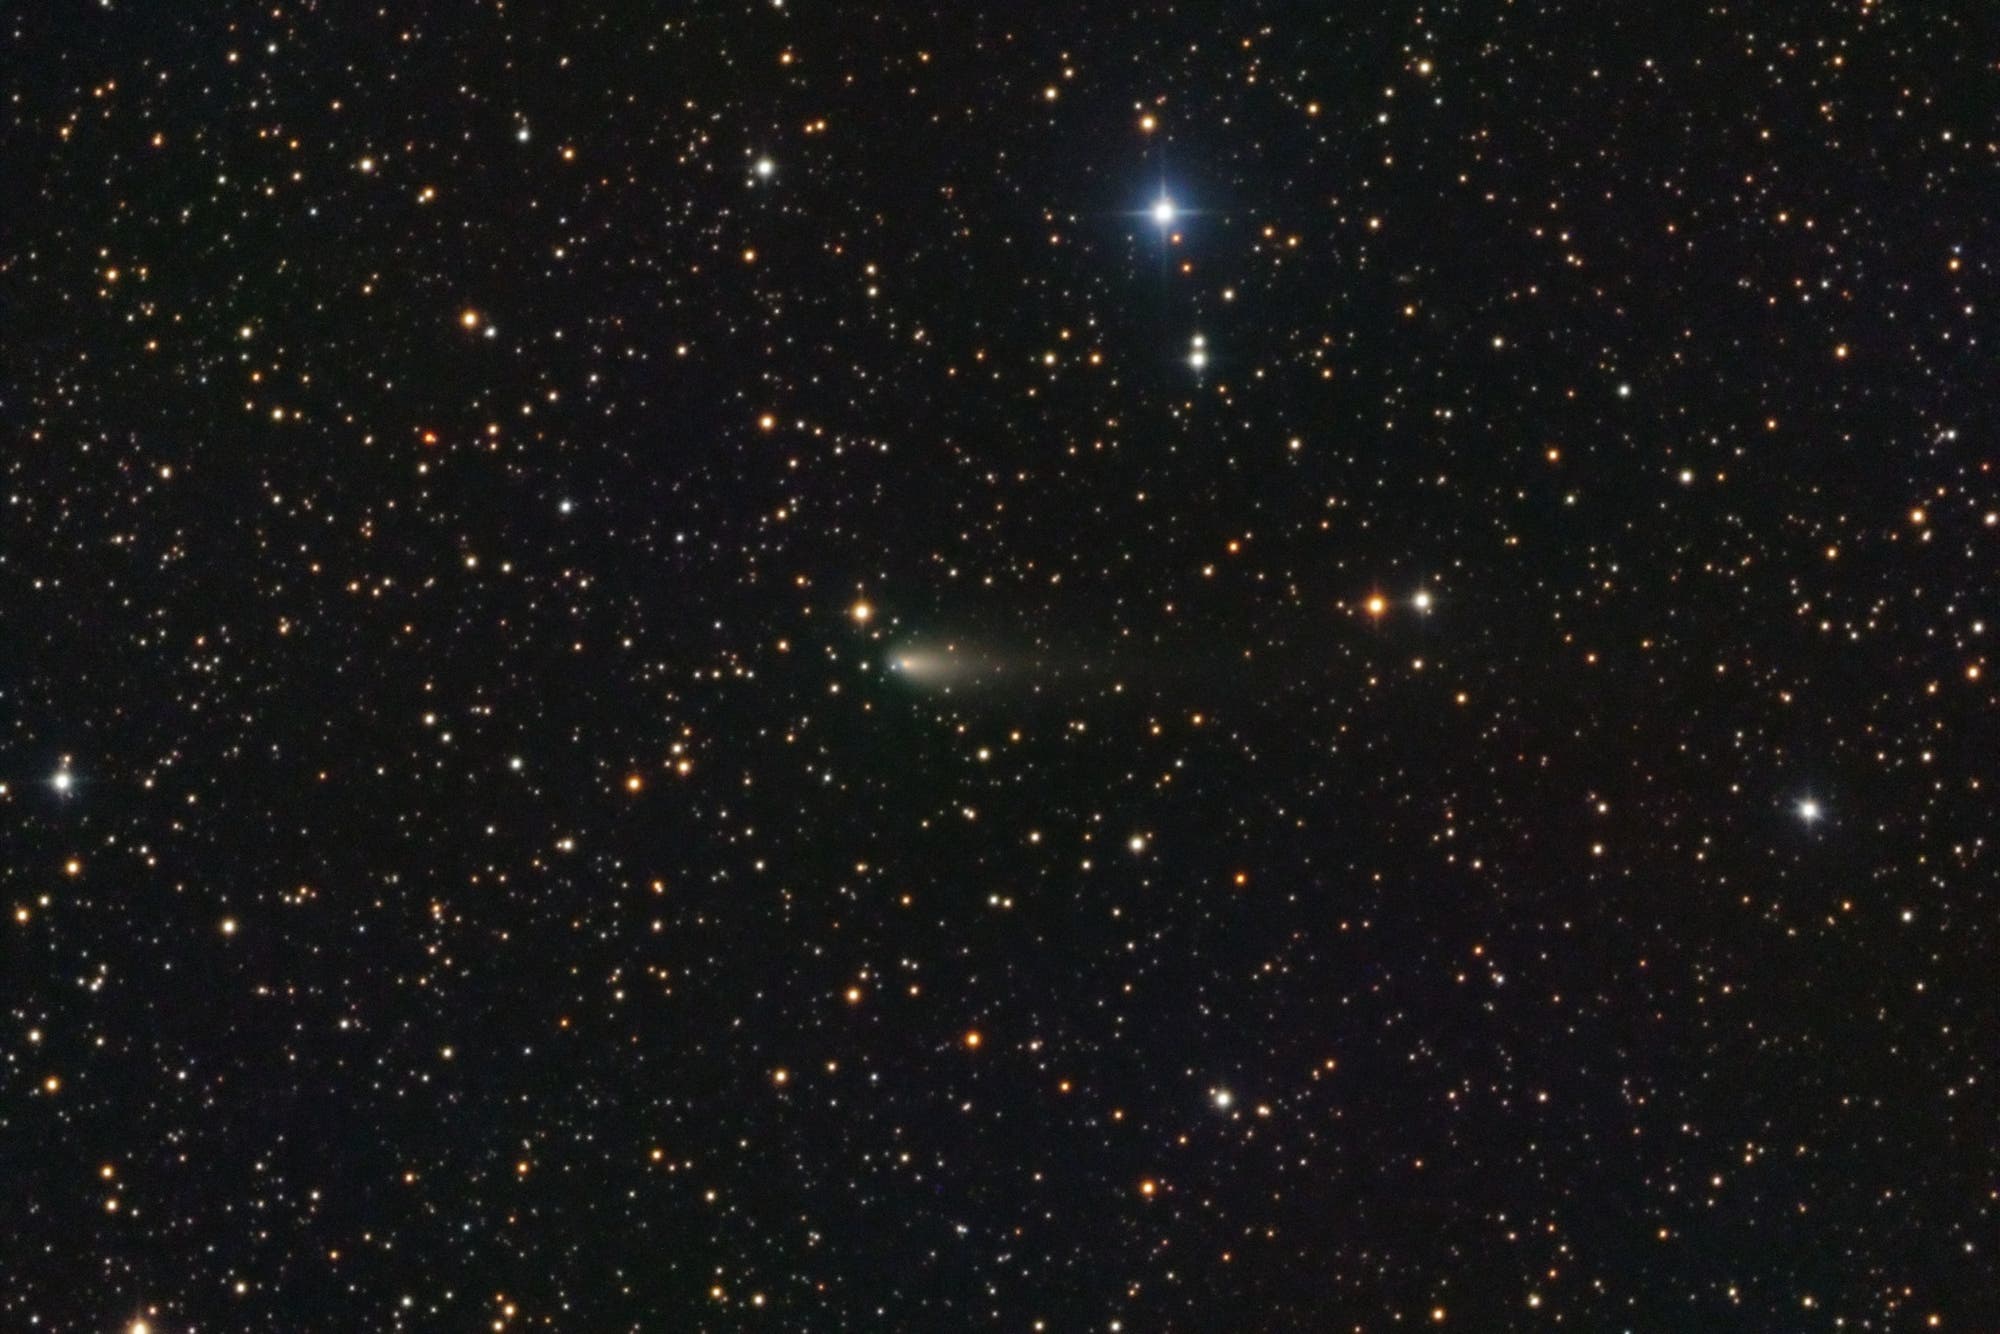 Comet 4P/Faye